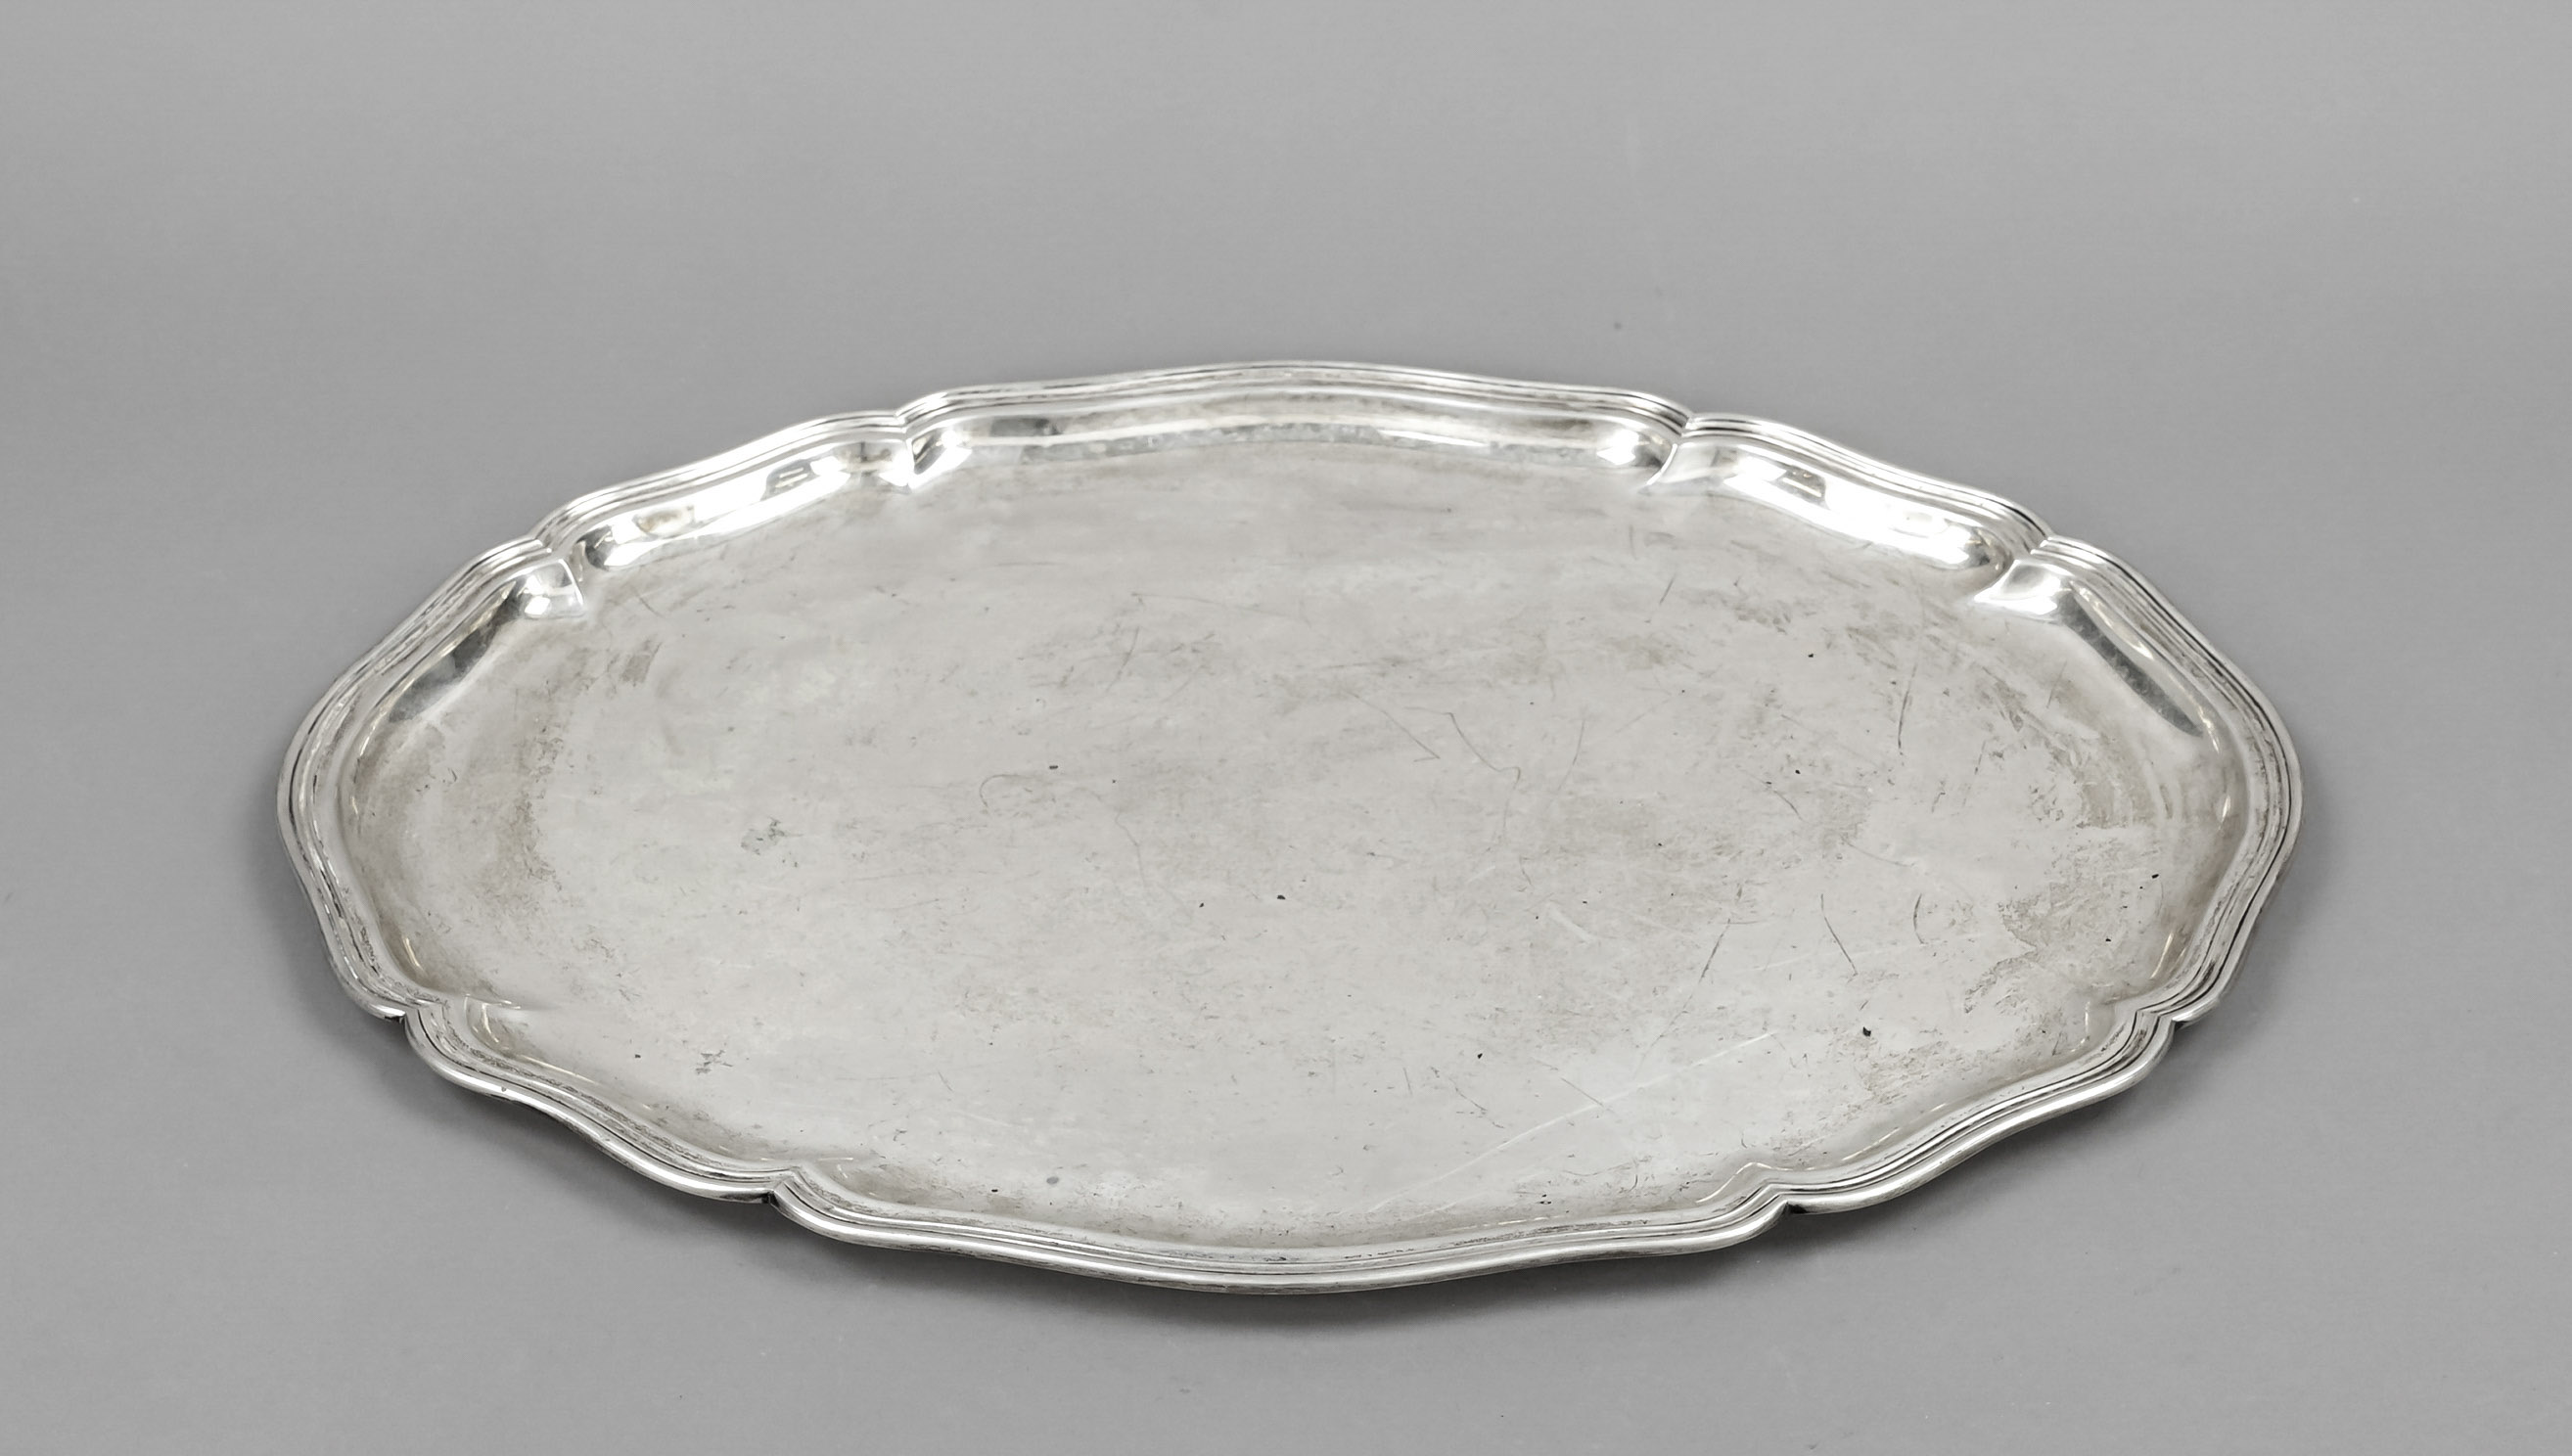 Oval tray, German, 20th century, maker's mark M. H. Wilkens & Söhne, Bremen-Hemelingen, silver 830/